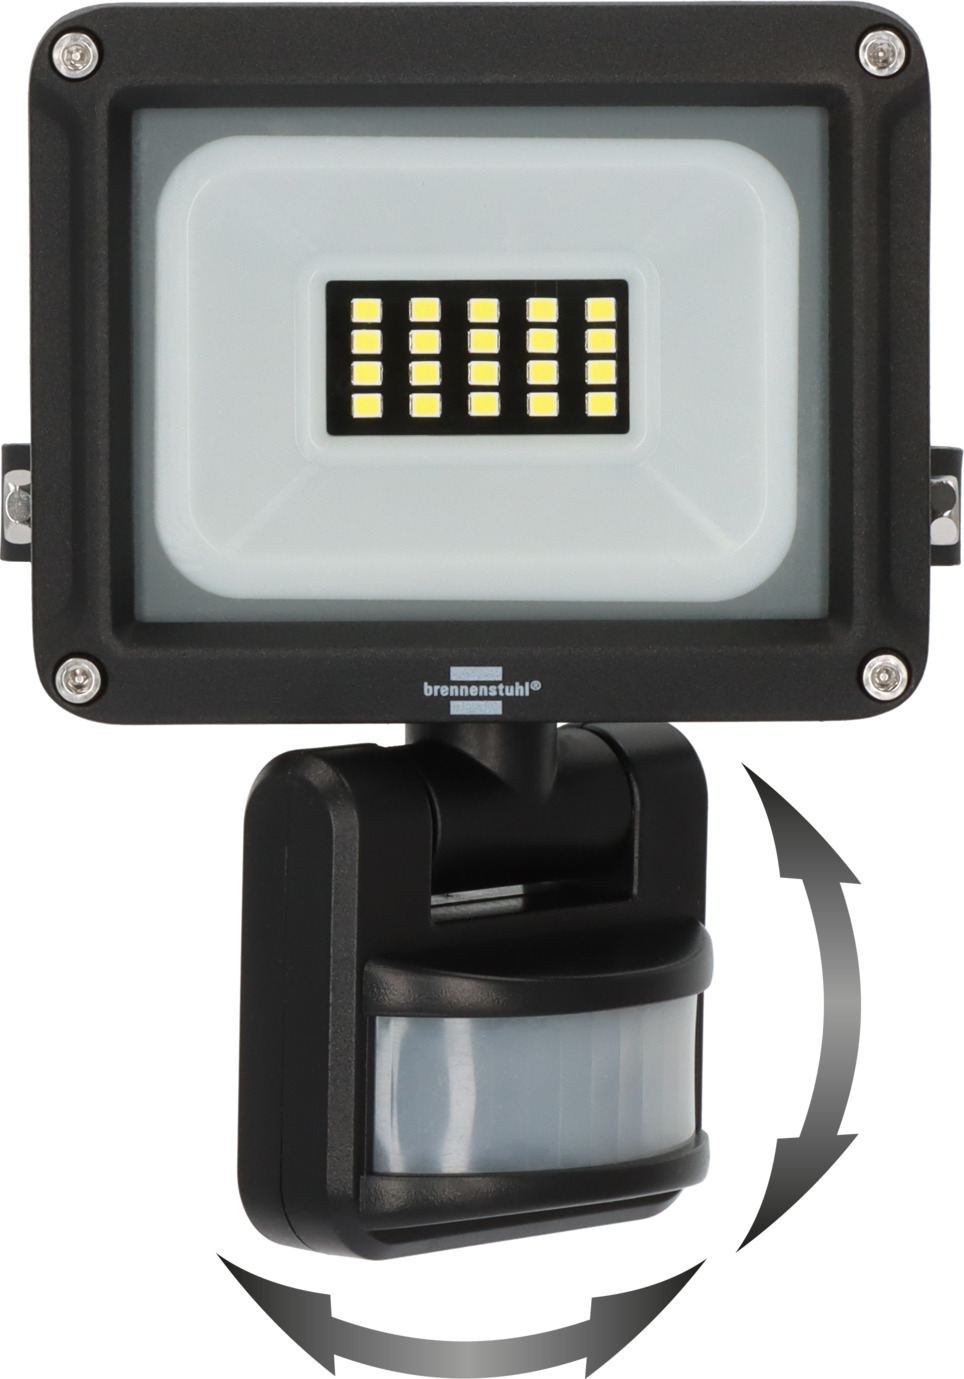 LED Strahler JARO 1060 IP65 P mit | 10W, Infrarot-Bewegungsmelder, 1150lm, brennenstuhl®